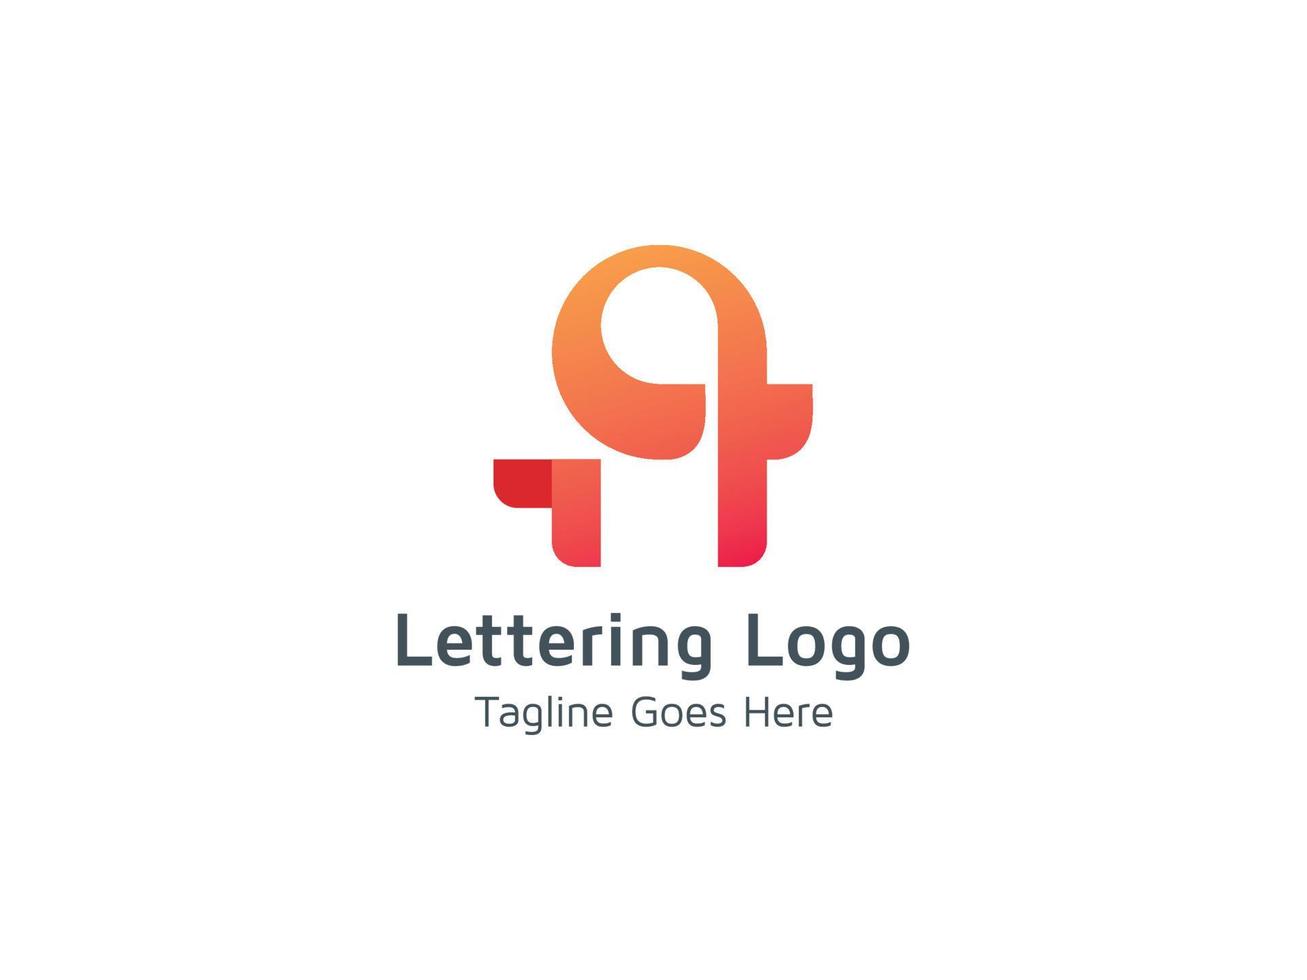 vector de plantilla de concepto de diseño de logotipo de letra a swash